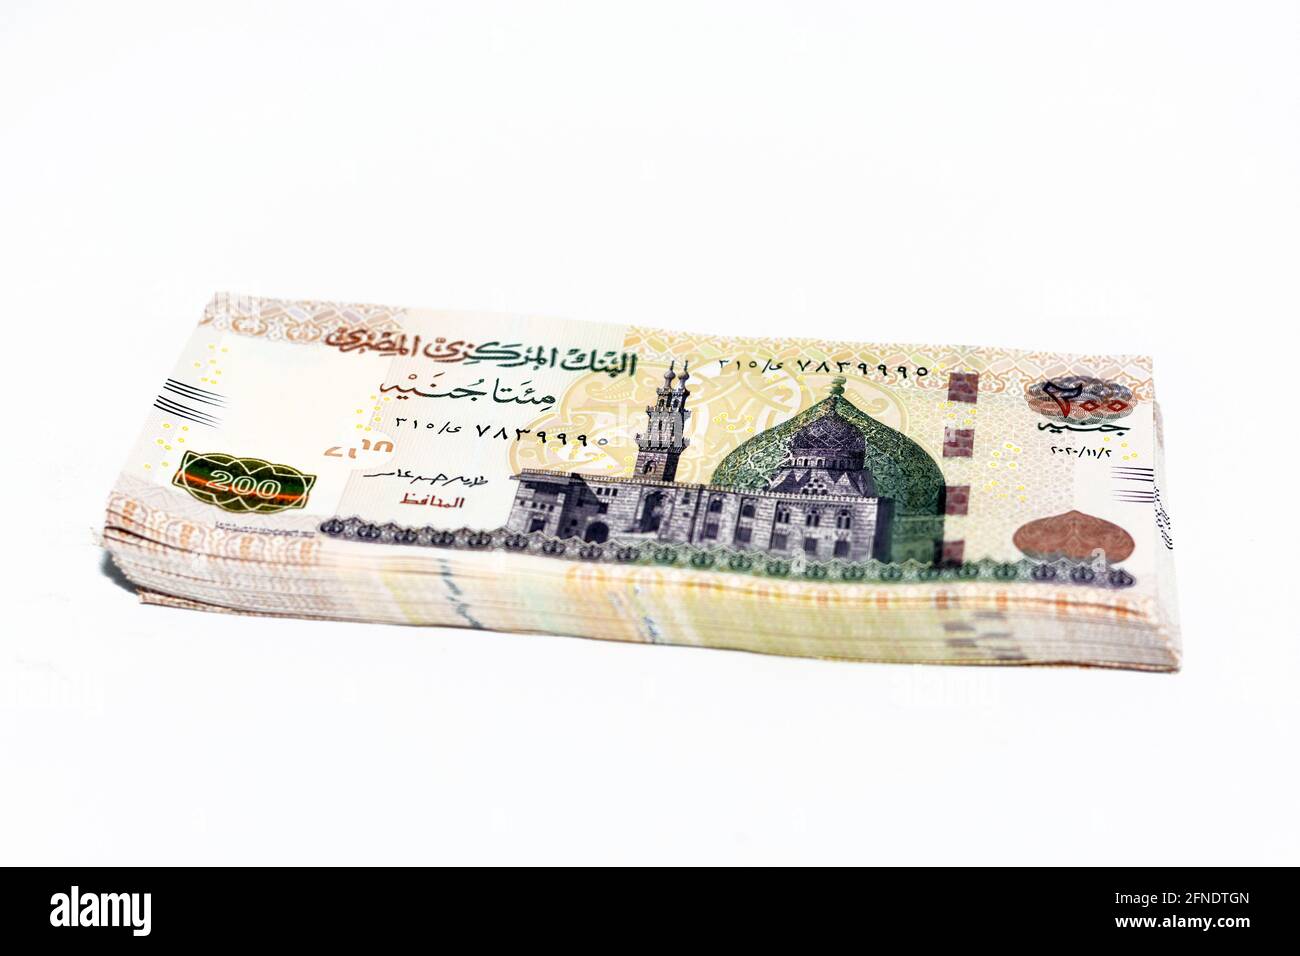 Ein großes Fragment der Vorderseite der 200 LE 200 Egyptian Pounds Banknote zeigt die Qani-Bay Moschee in Kairo Ägypten Stockfoto